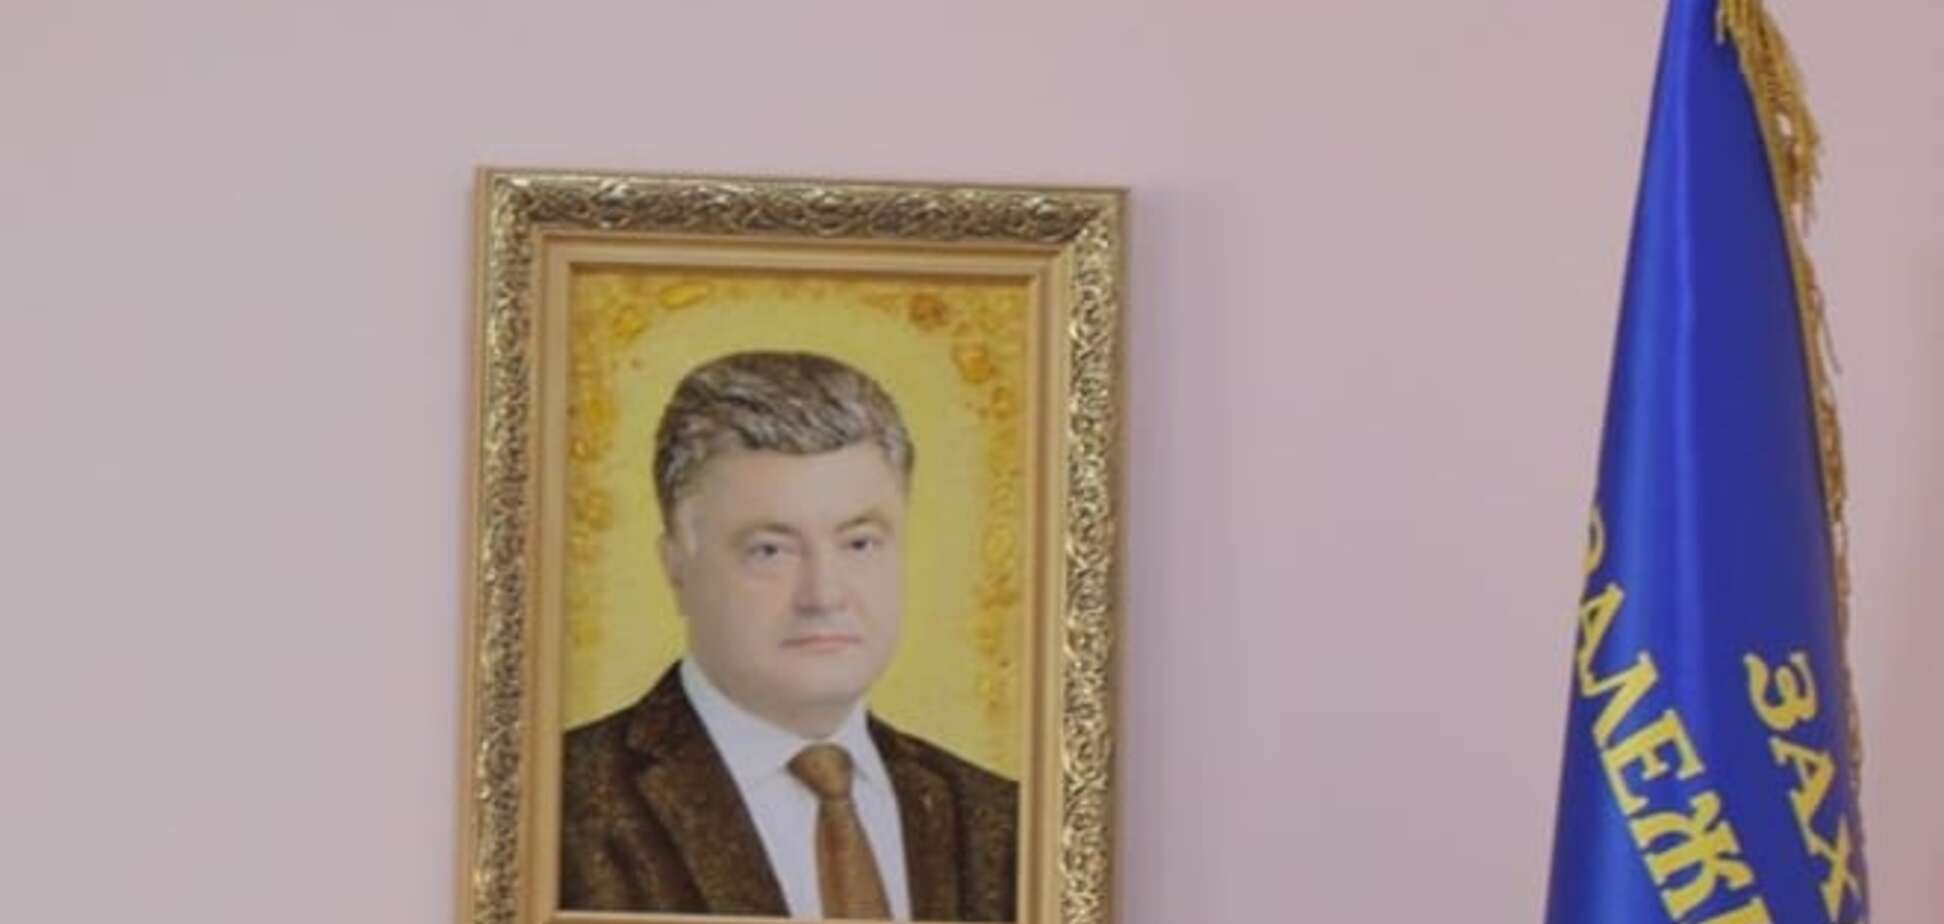 Среди чиновников появилась мода на портрет Порошенко из янтаря: фотофакт